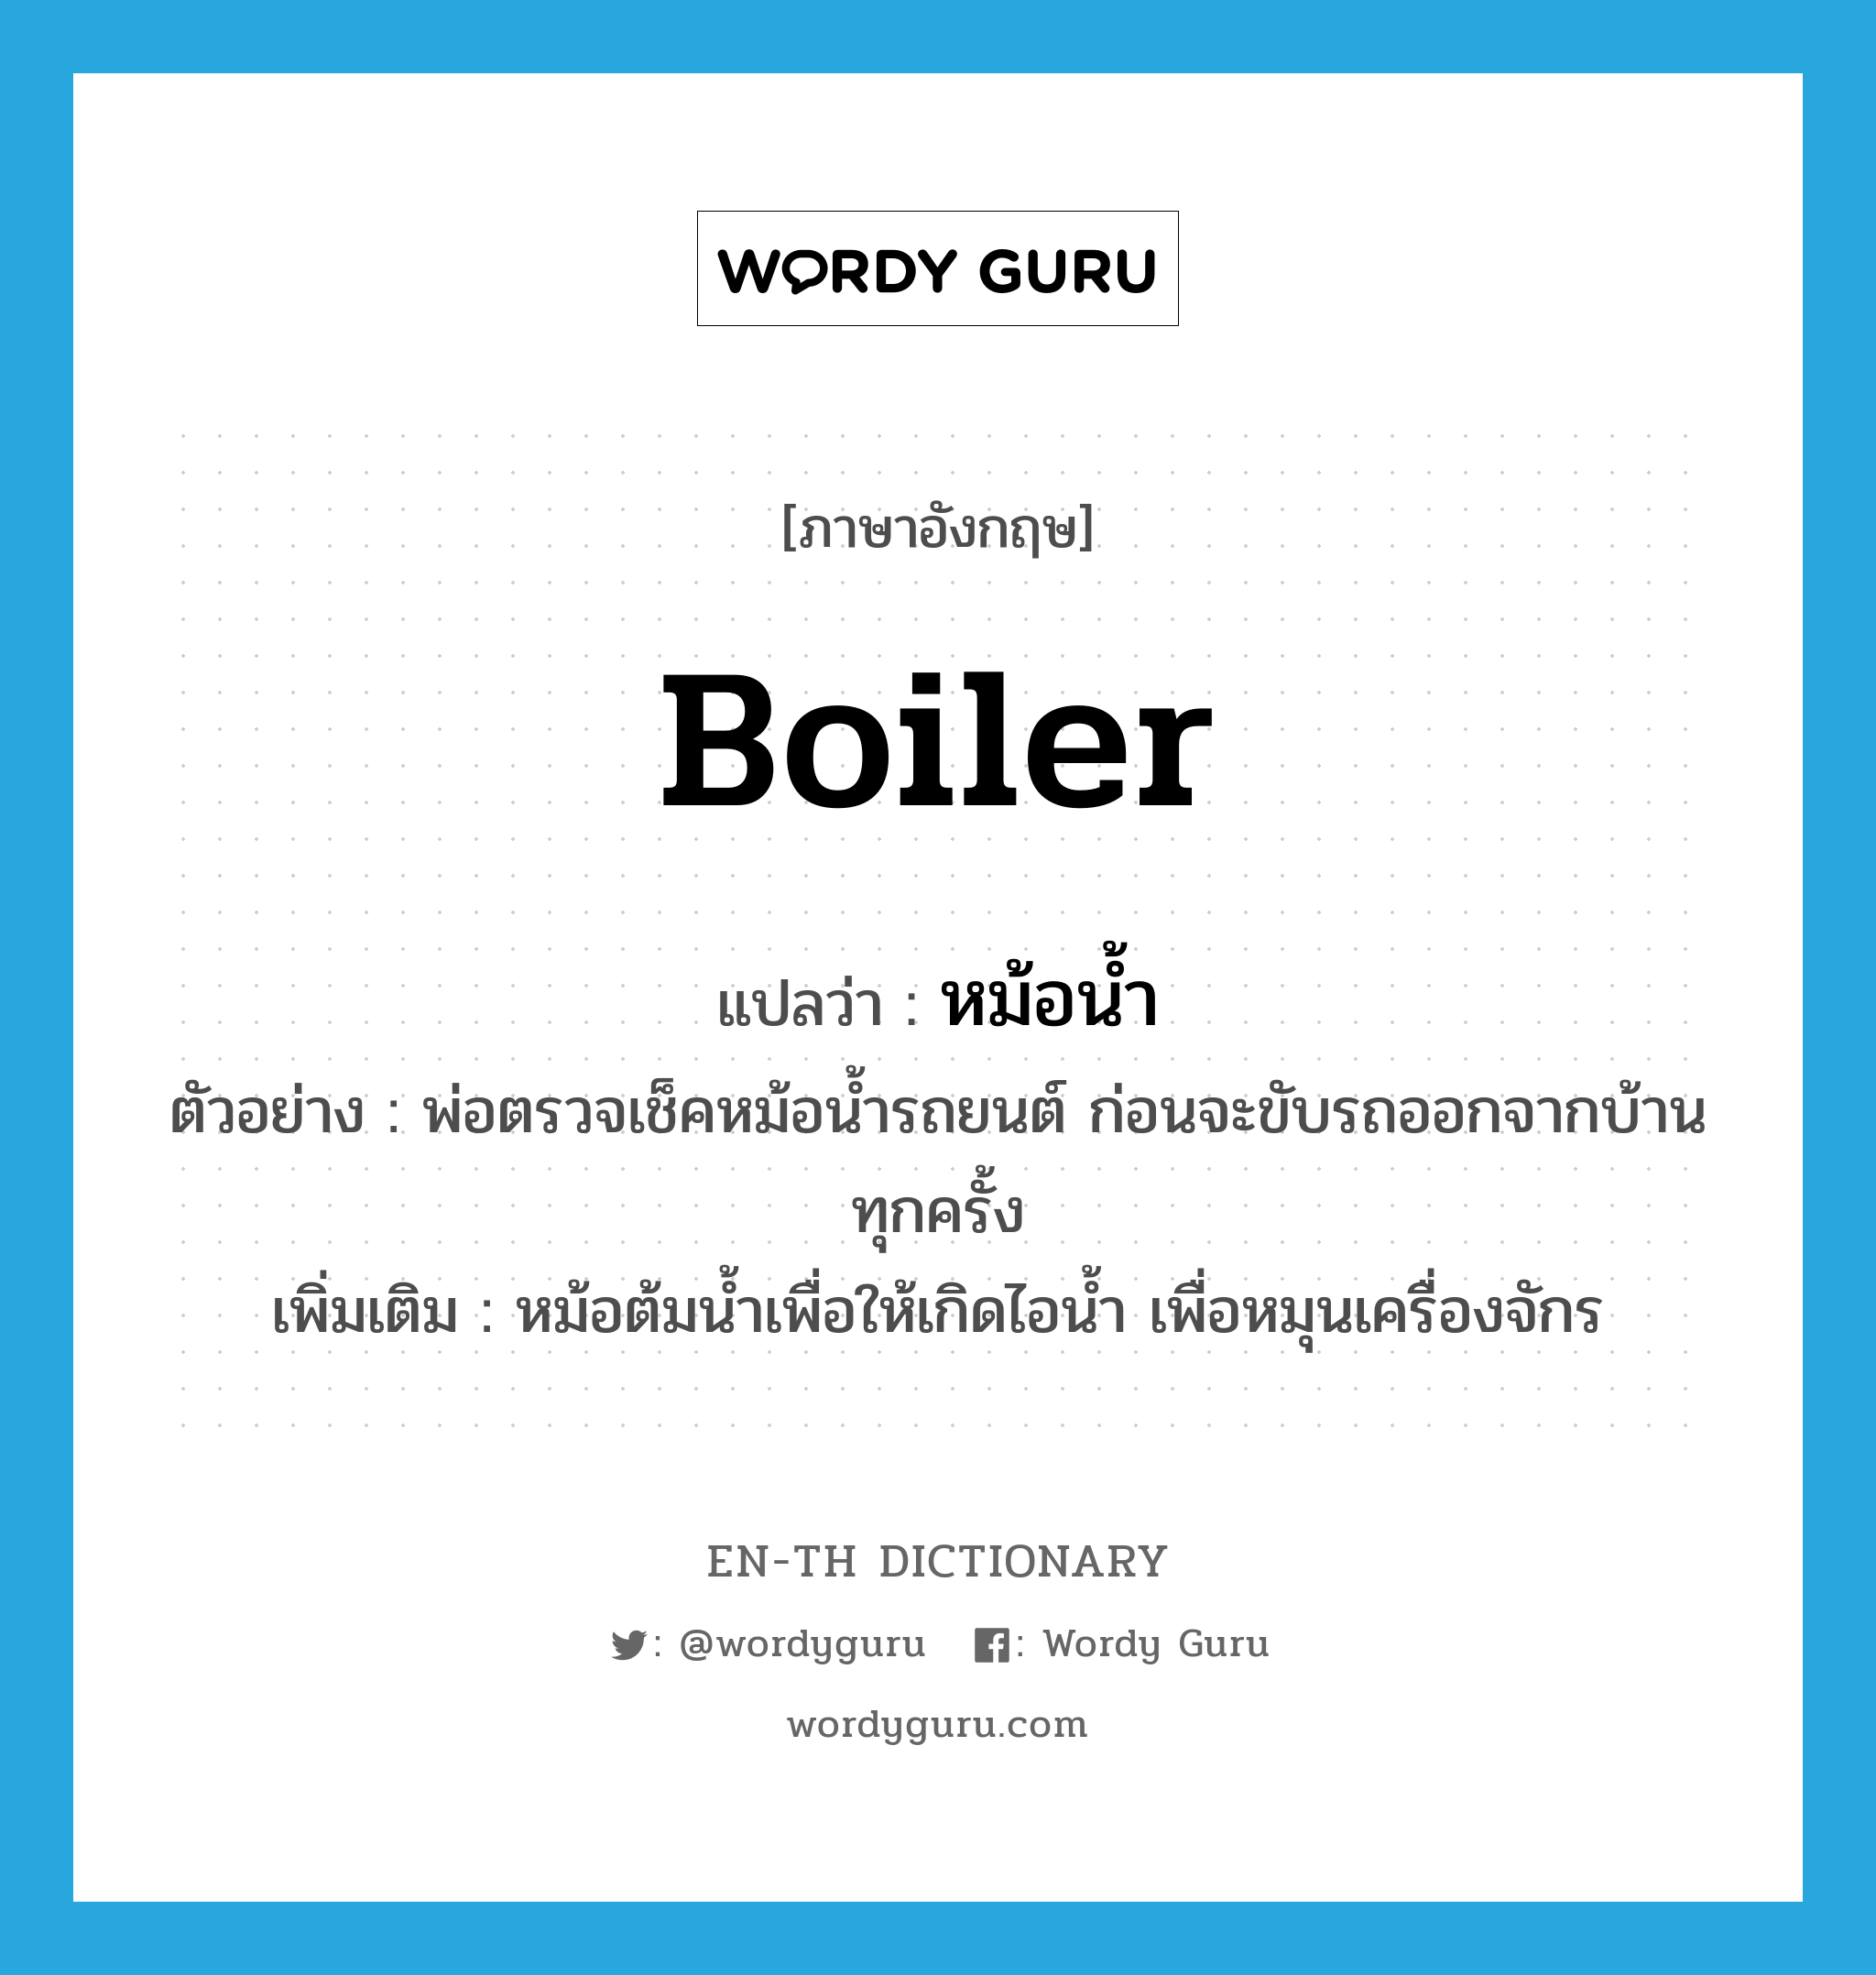 boiler แปลว่า?, คำศัพท์ภาษาอังกฤษ boiler แปลว่า หม้อน้ำ ประเภท N ตัวอย่าง พ่อตรวจเช็คหม้อน้ำรถยนต์ ก่อนจะขับรถออกจากบ้านทุกครั้ง เพิ่มเติม หม้อต้มน้ำเพื่อให้เกิดไอน้ำ เพื่อหมุนเครื่องจักร หมวด N